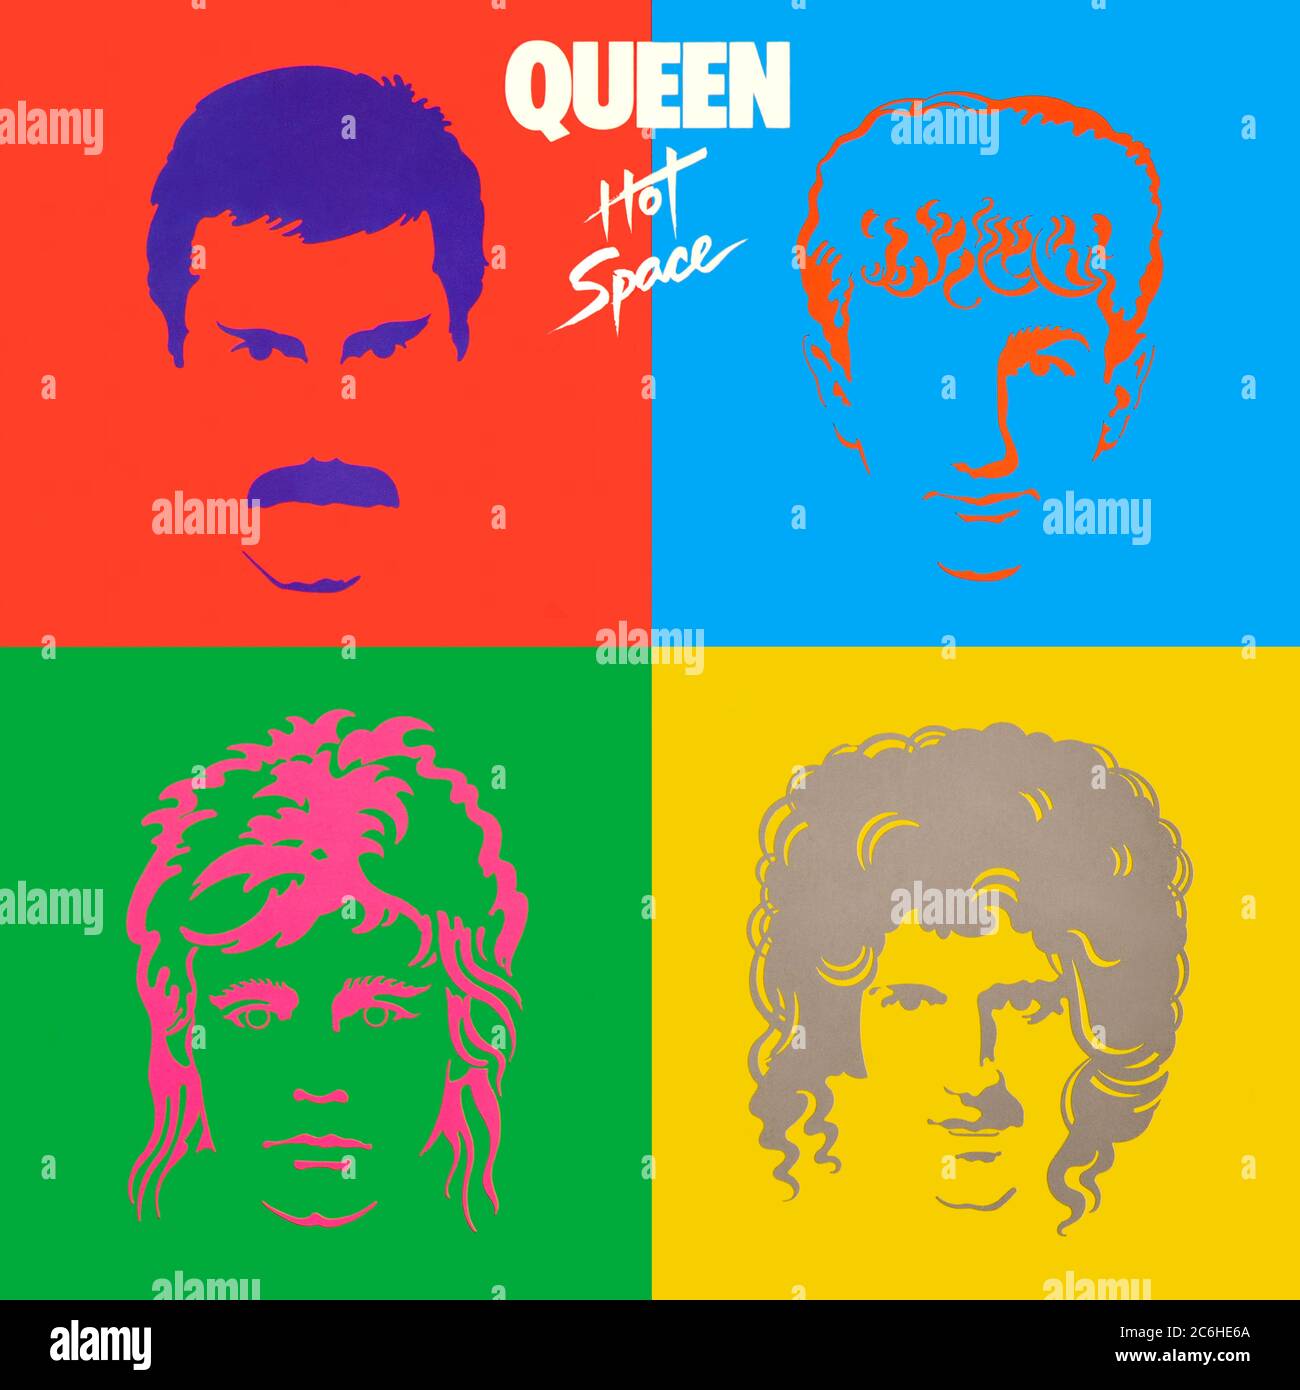 Queen - couverture originale d'album en vinyle - espace chaud - 1982 Banque D'Images